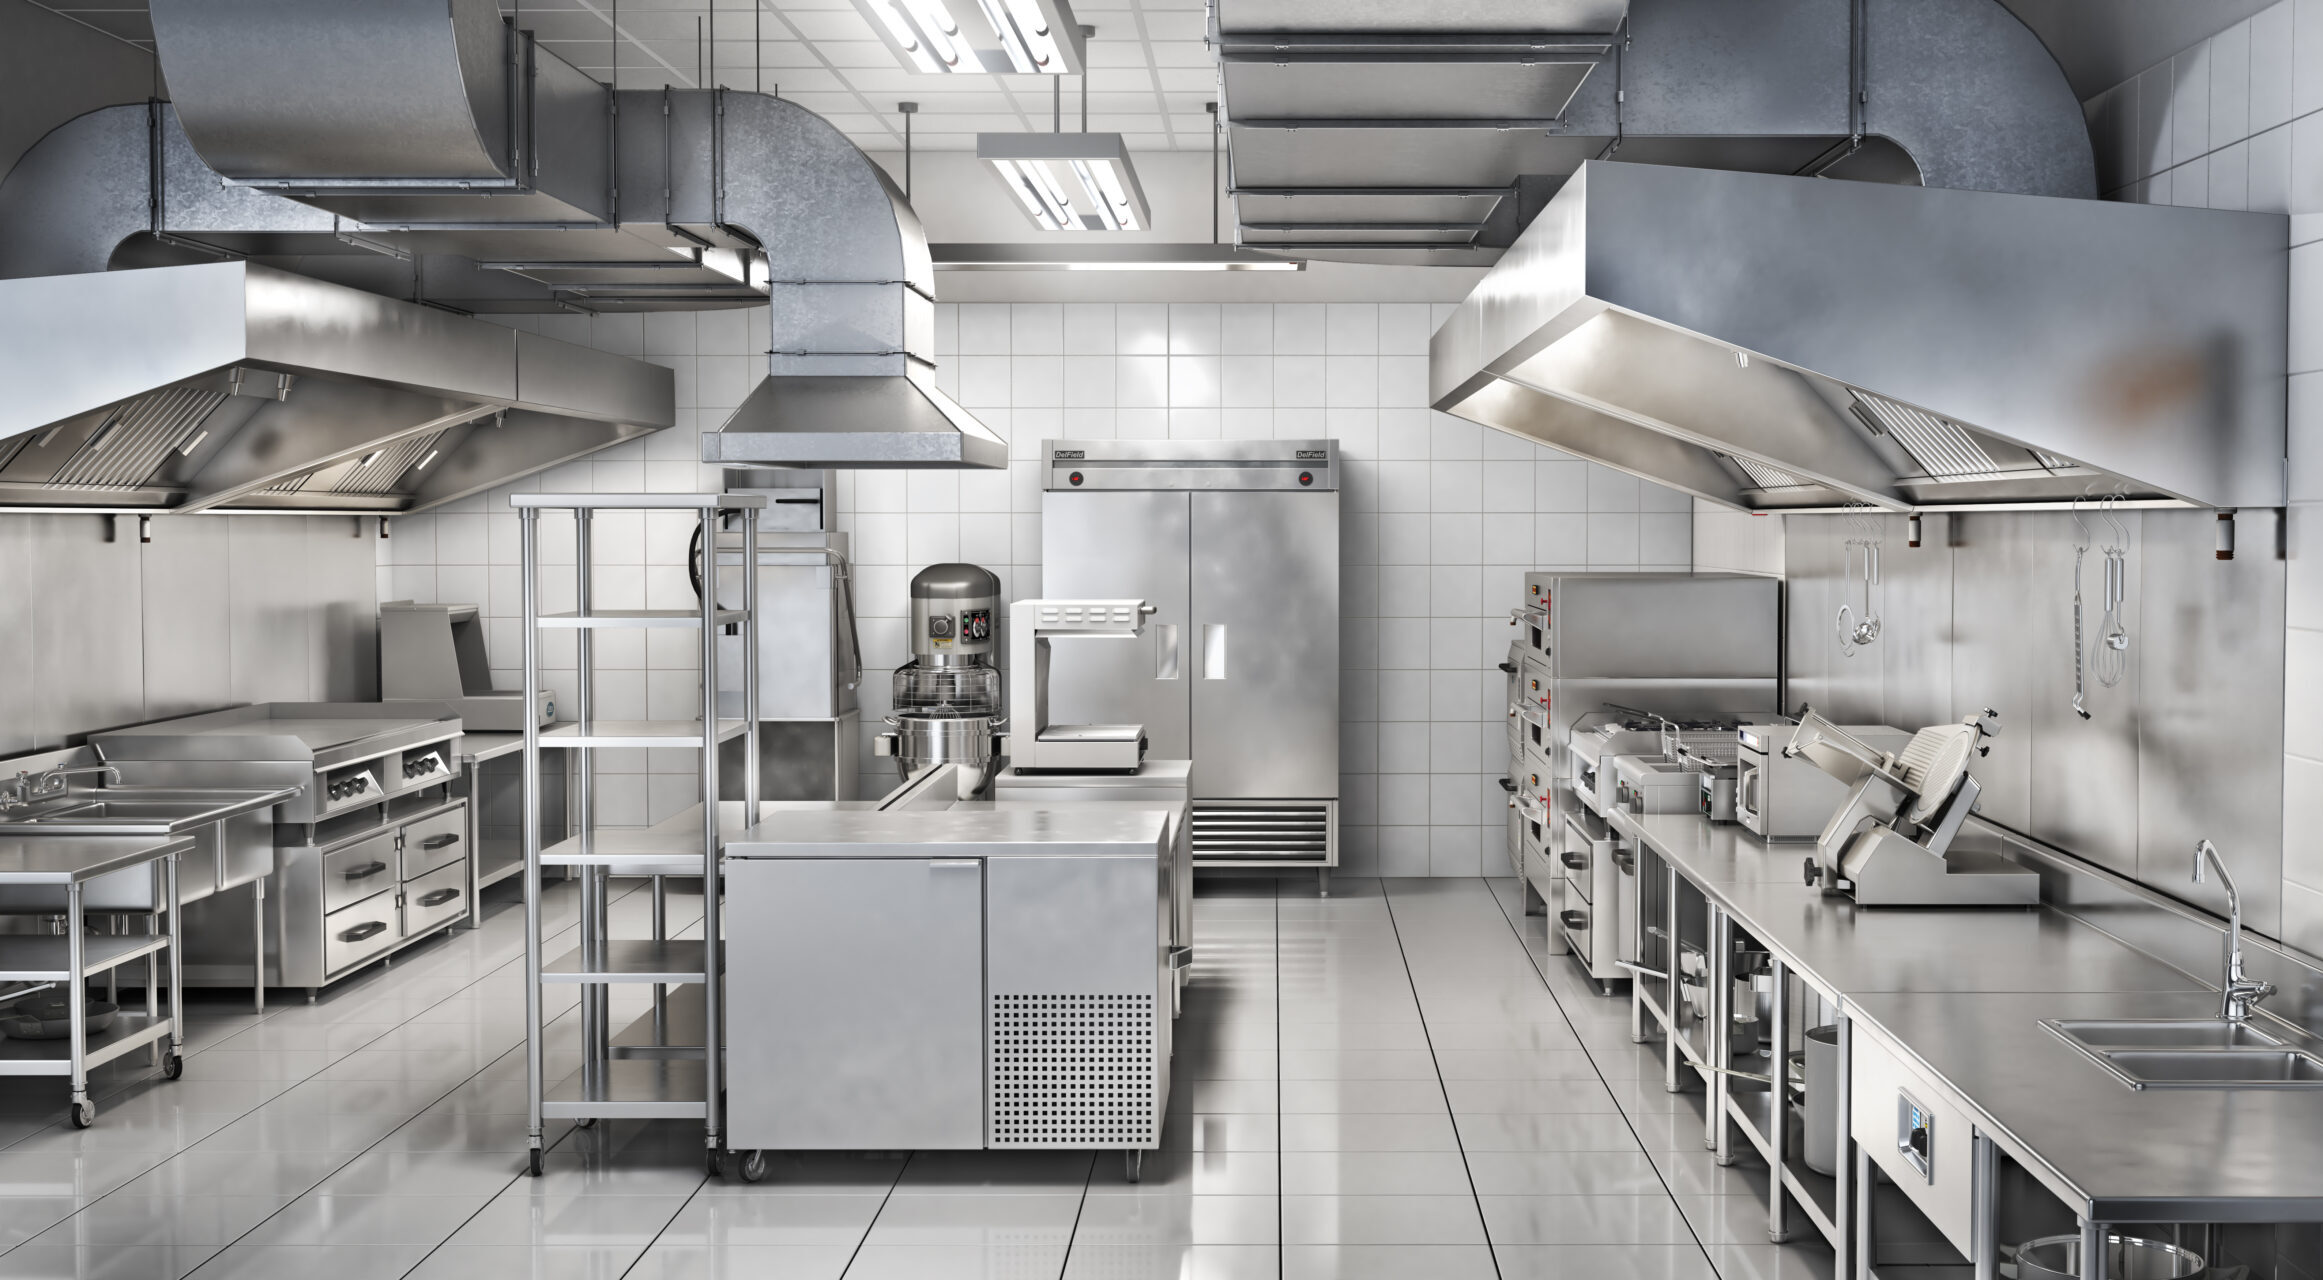 Industrial Kitchen. Restaurant Kitchen. 3d Illustration